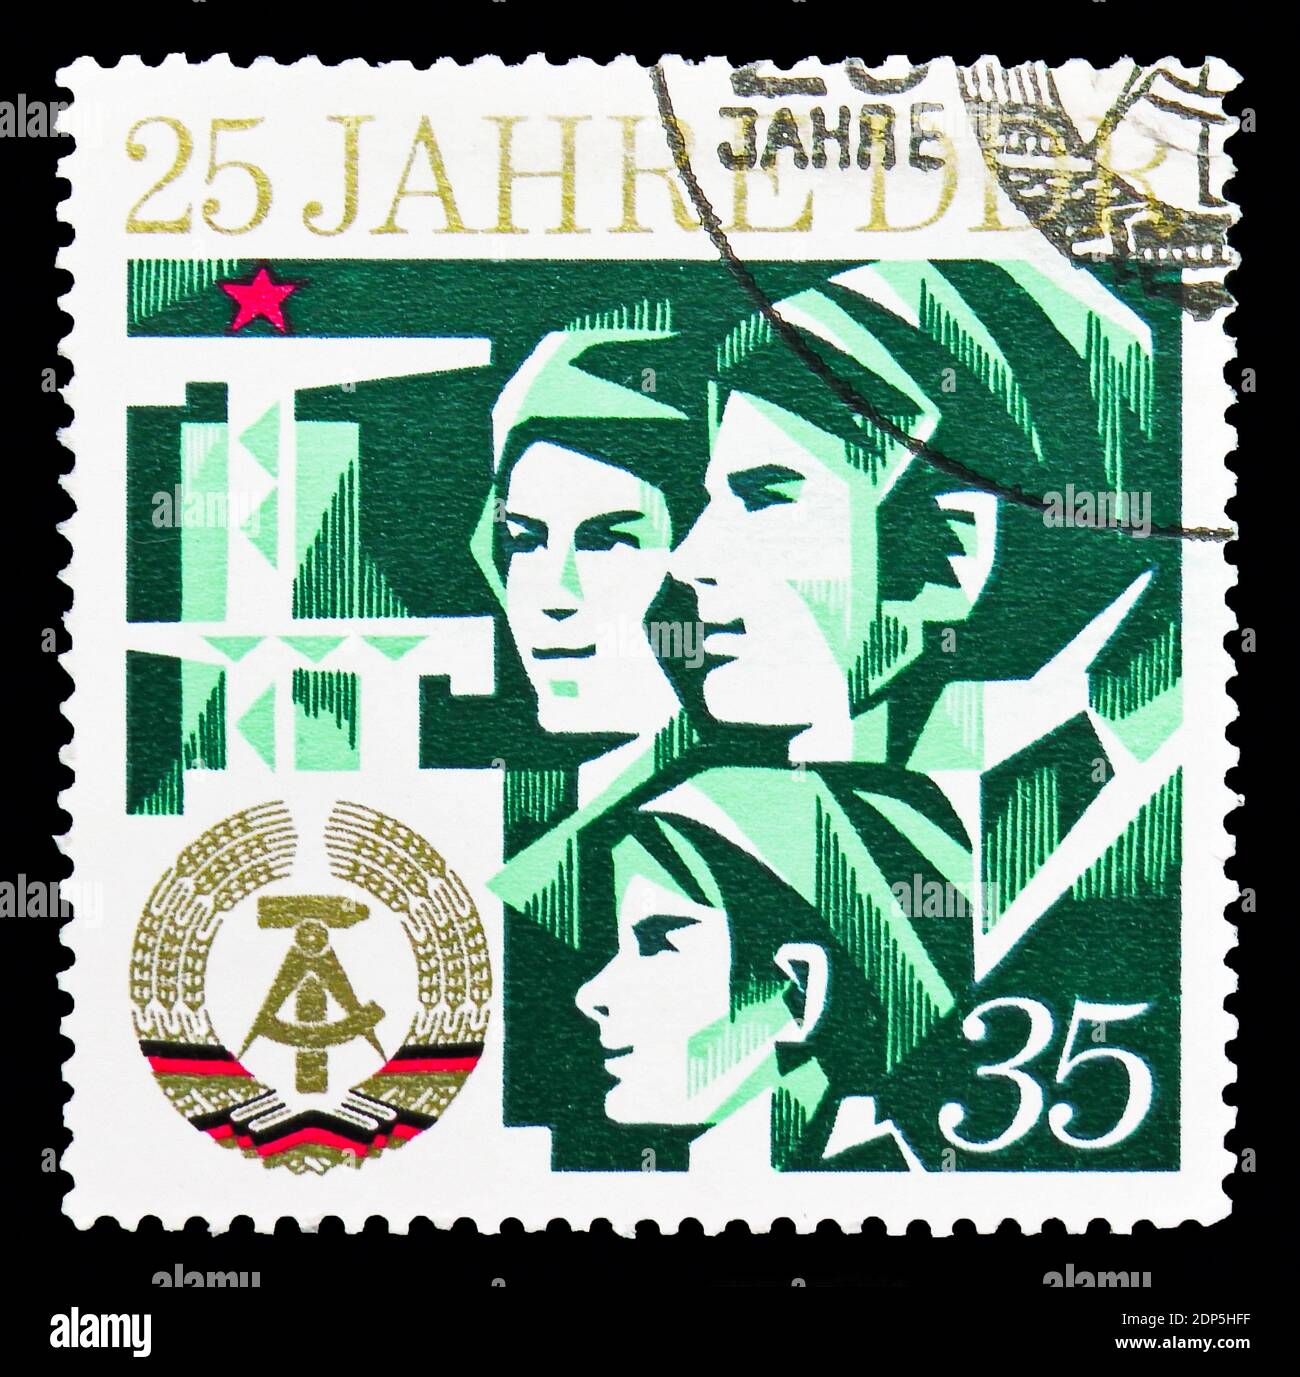 MOSKAU, RUSSLAND - 15. SEPTEMBER 2018: Eine in der DDR gedruckte Briefmarke zeigt Familie, 25 Jahre DDR-Serie, um 1974 Stockfoto